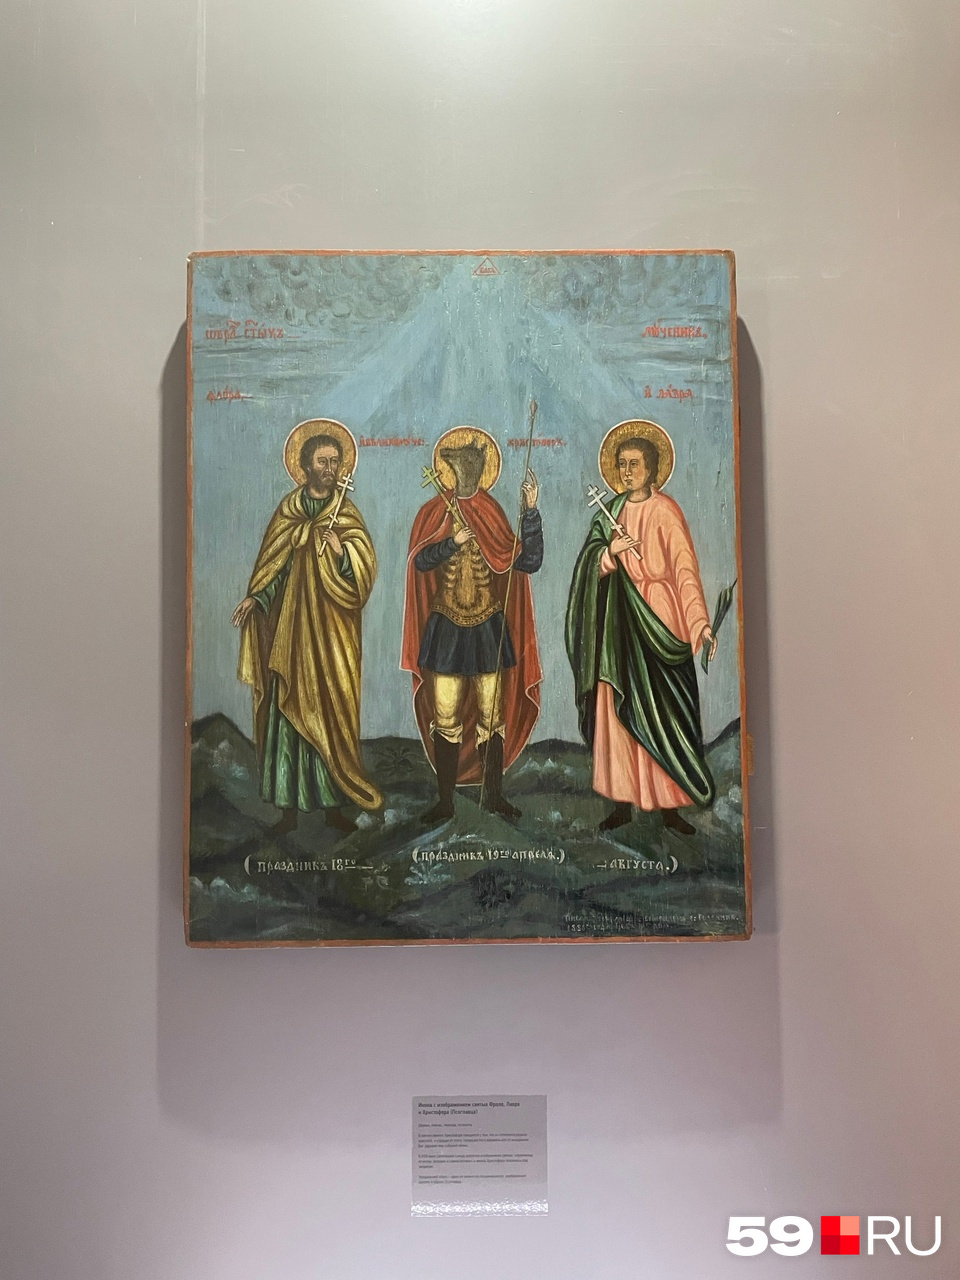 Редкая икона с изображением святого Христофора с головой собаки